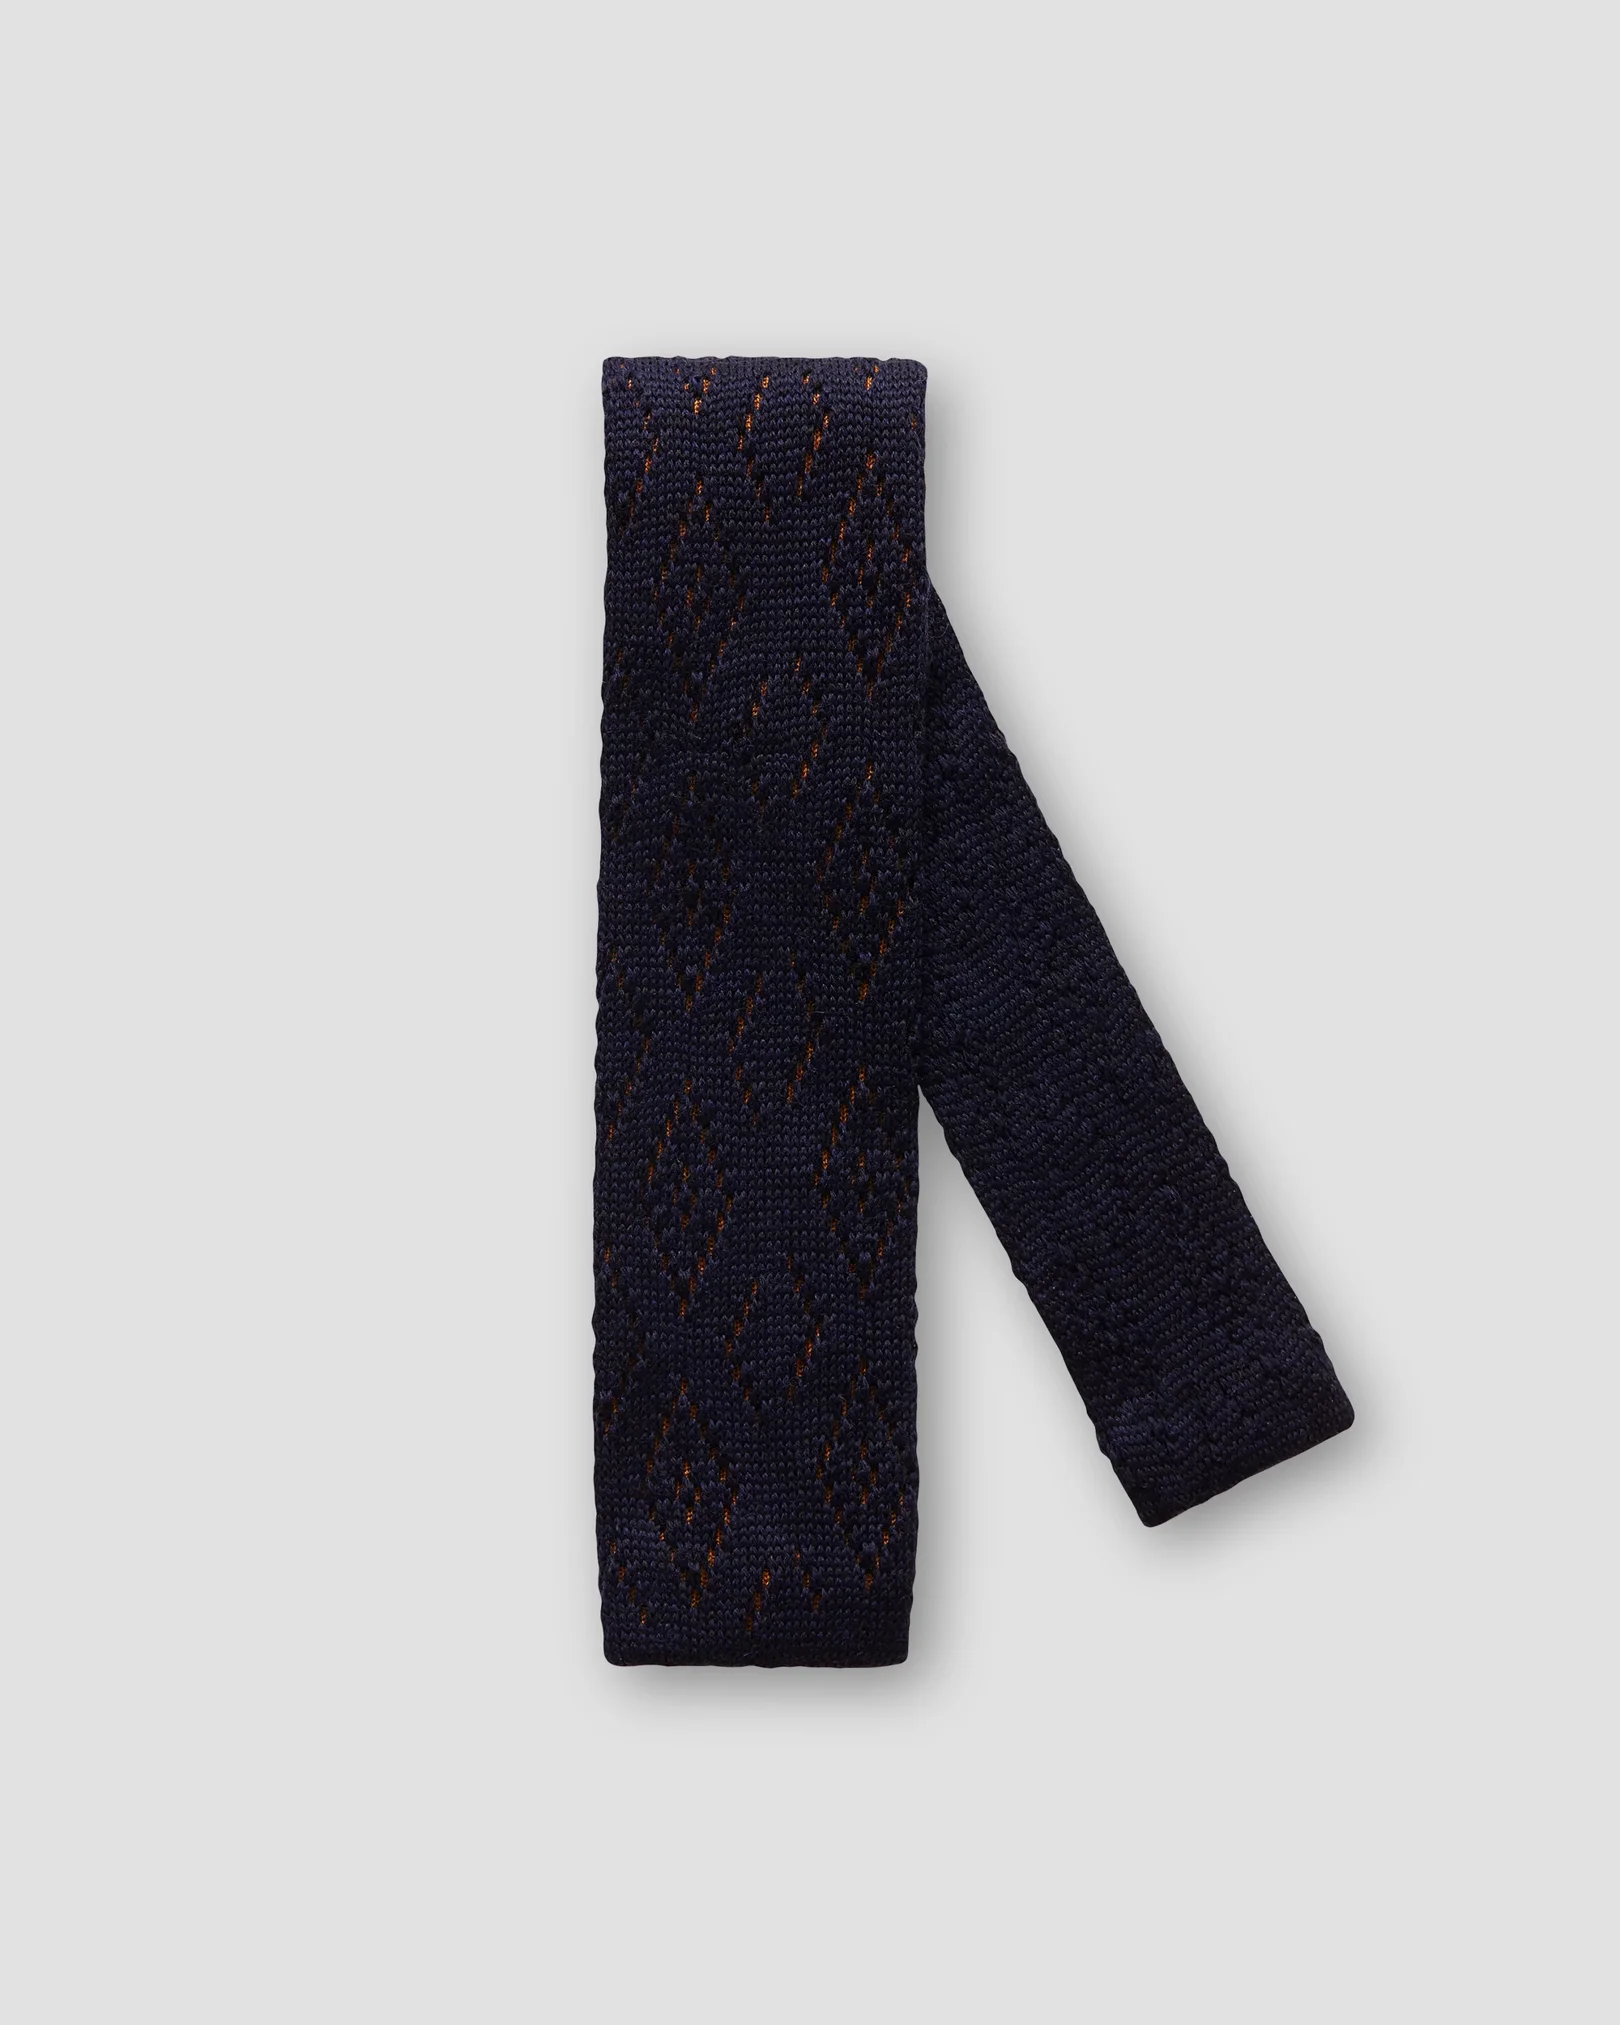 Eton - navy blue knitted tie